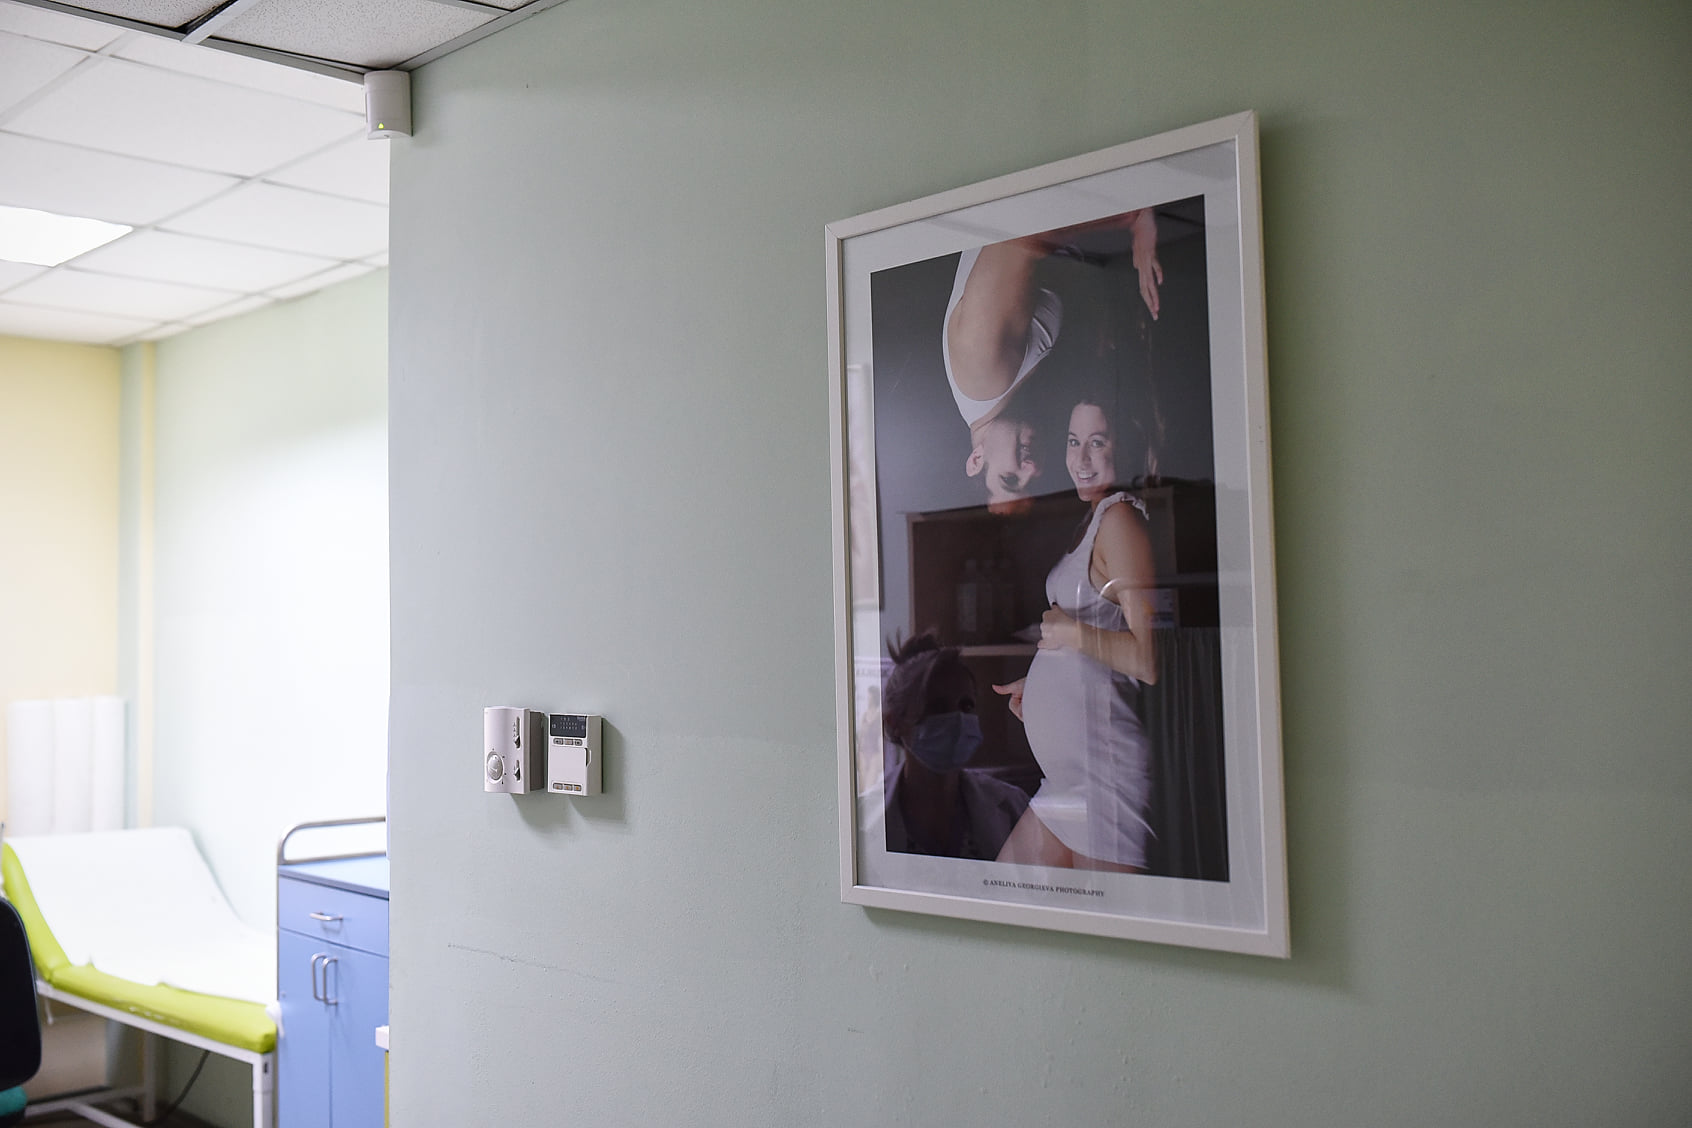 Kоридорите на АГ и неонатологично отделение бяха озарени от фотографии на бременни, бебета и деца